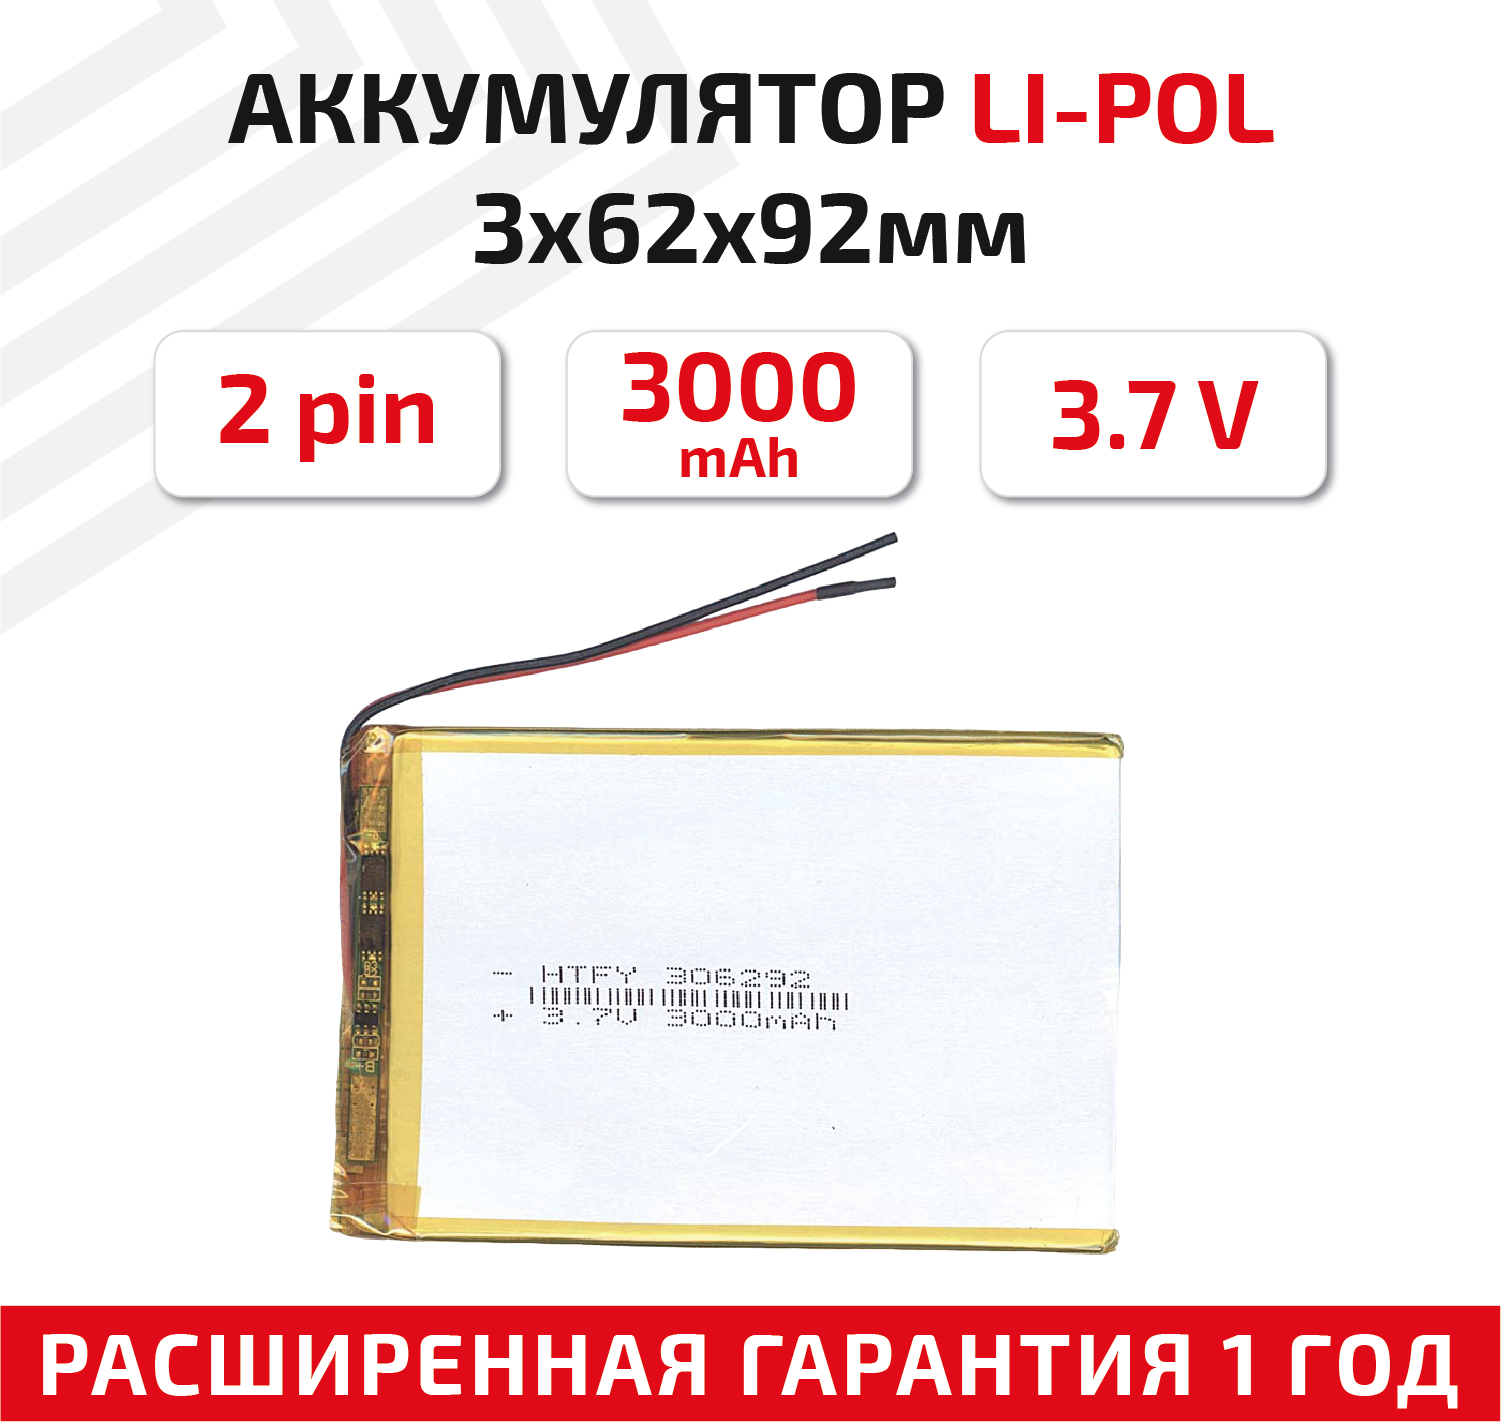 Универсальный аккумулятор (АКБ) для планшета видеорегистратора и др 3х62х92мм 3000мАч 3.7В Li-Pol 2pin (на 2 провода)